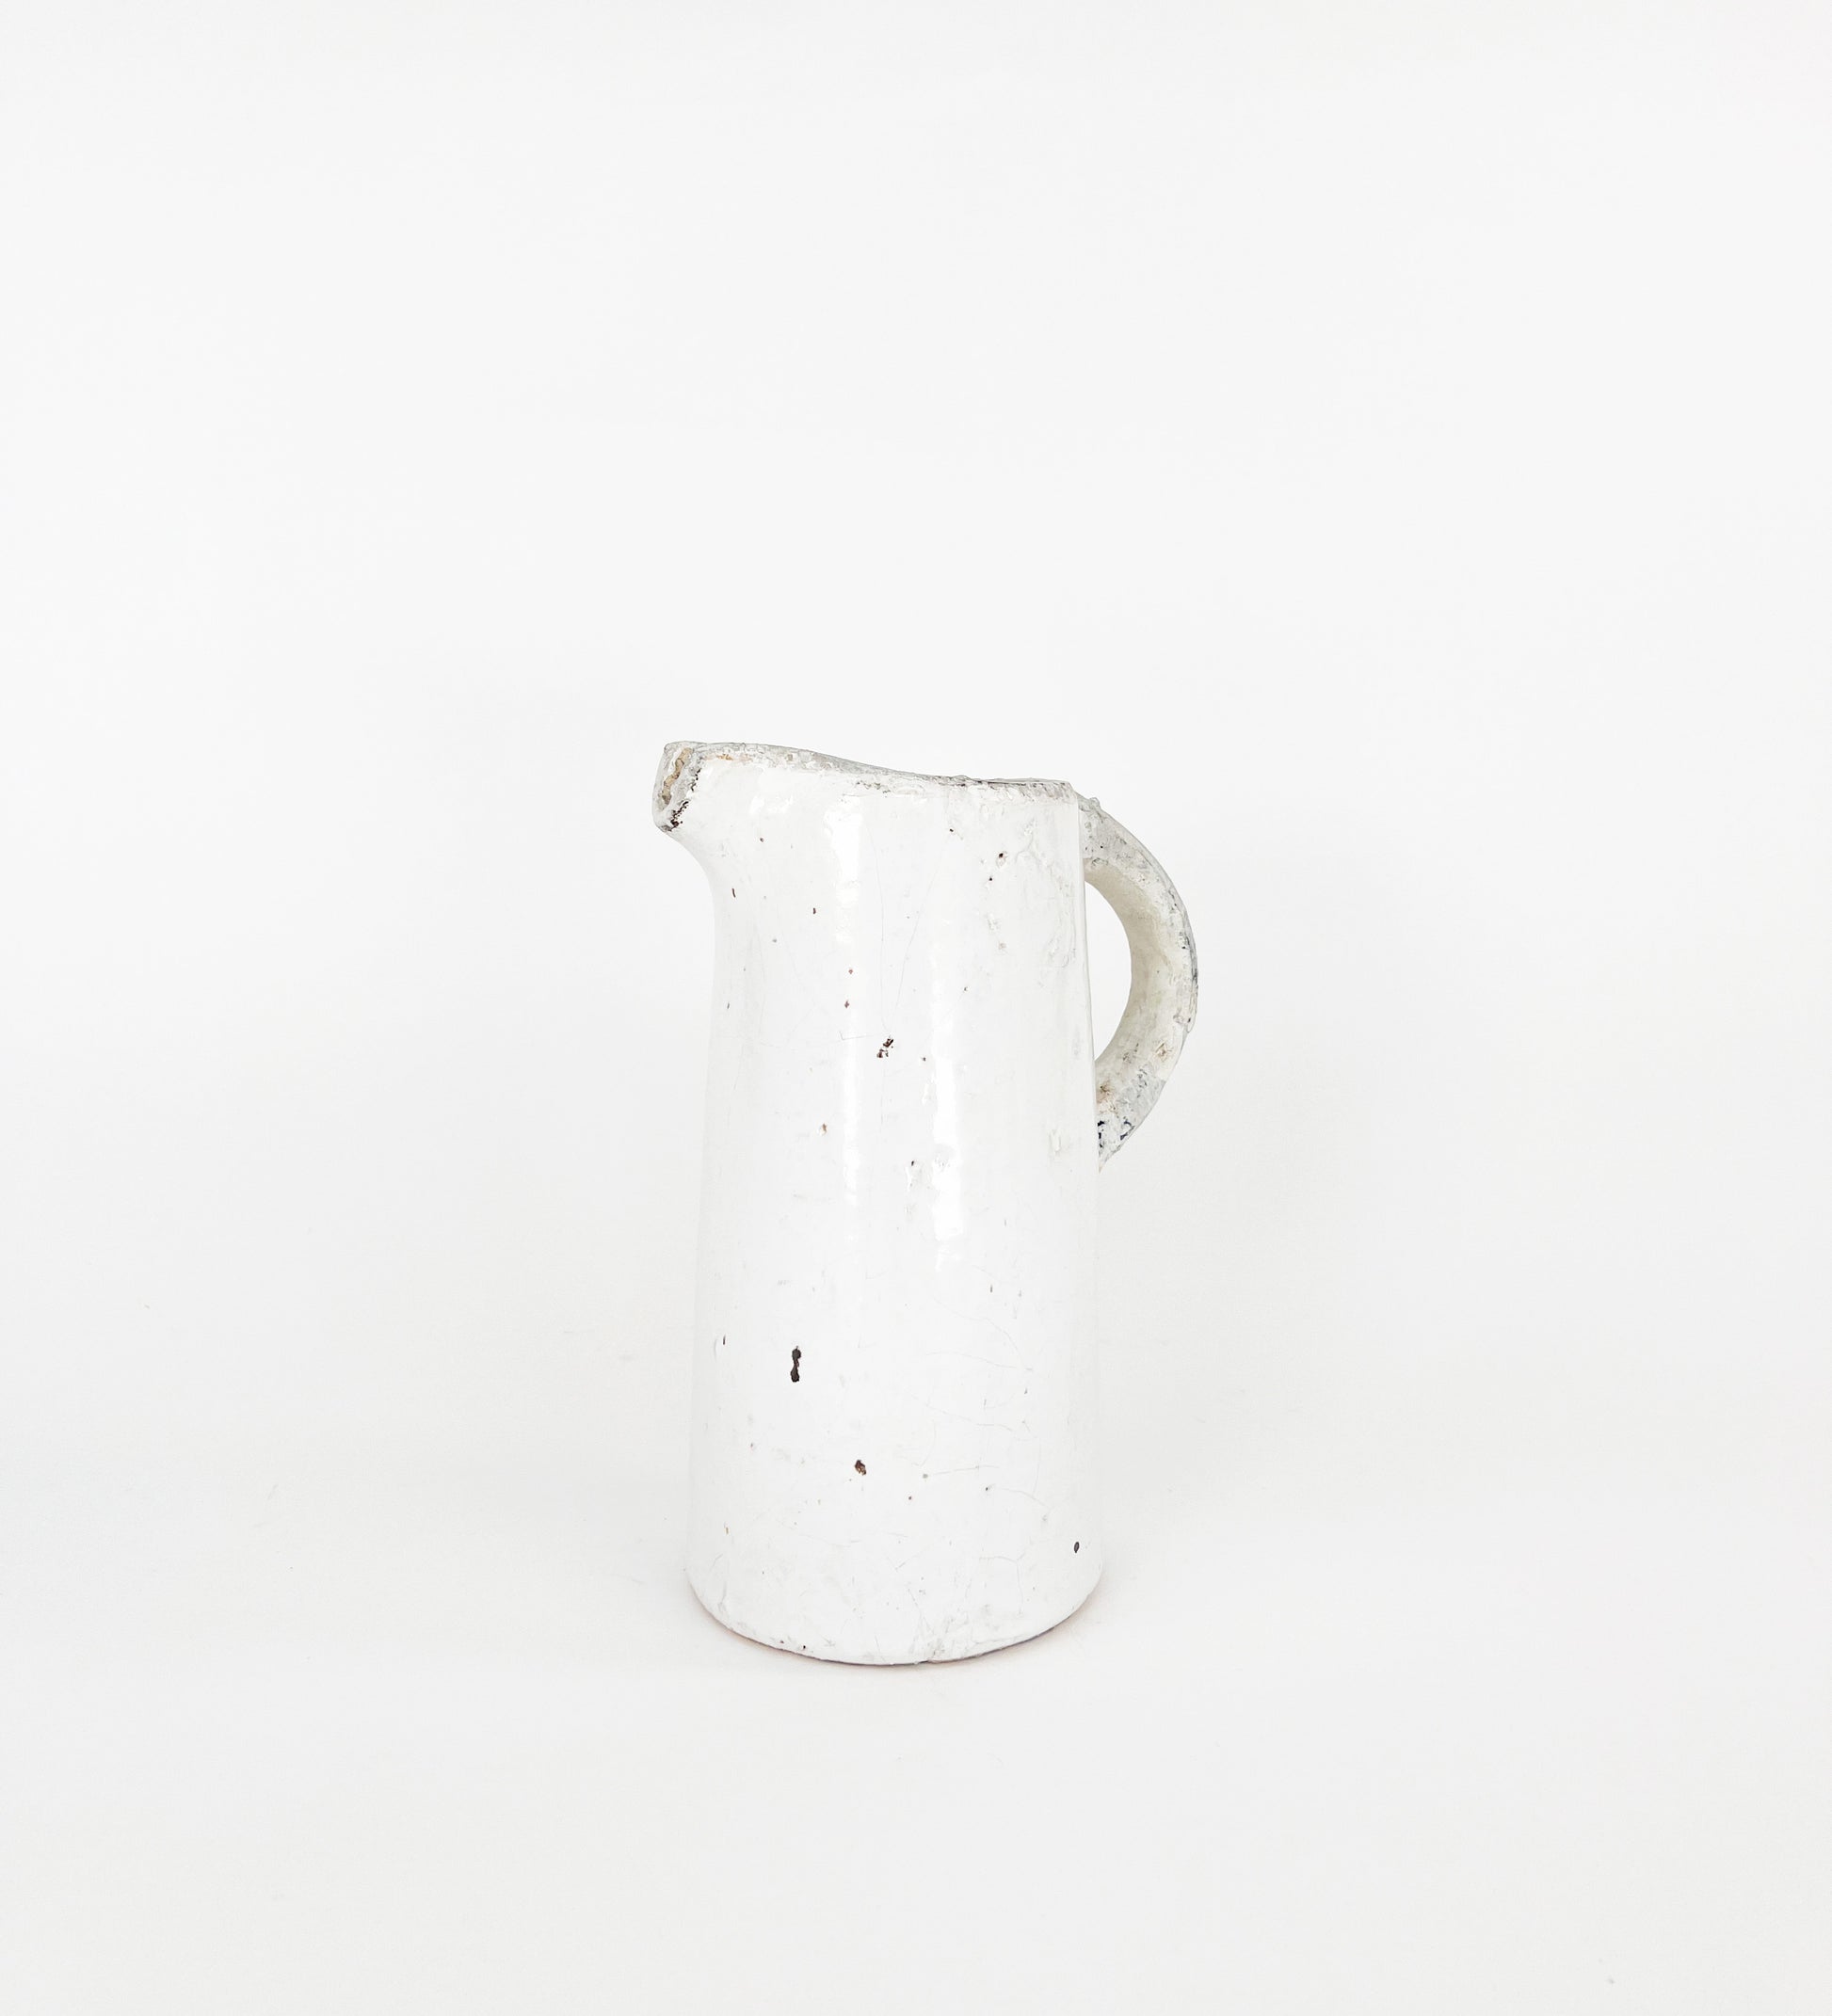 white ceramic pitcher on white backdrop, white vase, ceramic pitcher vase, vintage inspired pitcher vase, gardening vase, spring decor, vintage inspired decor, vintage home decor